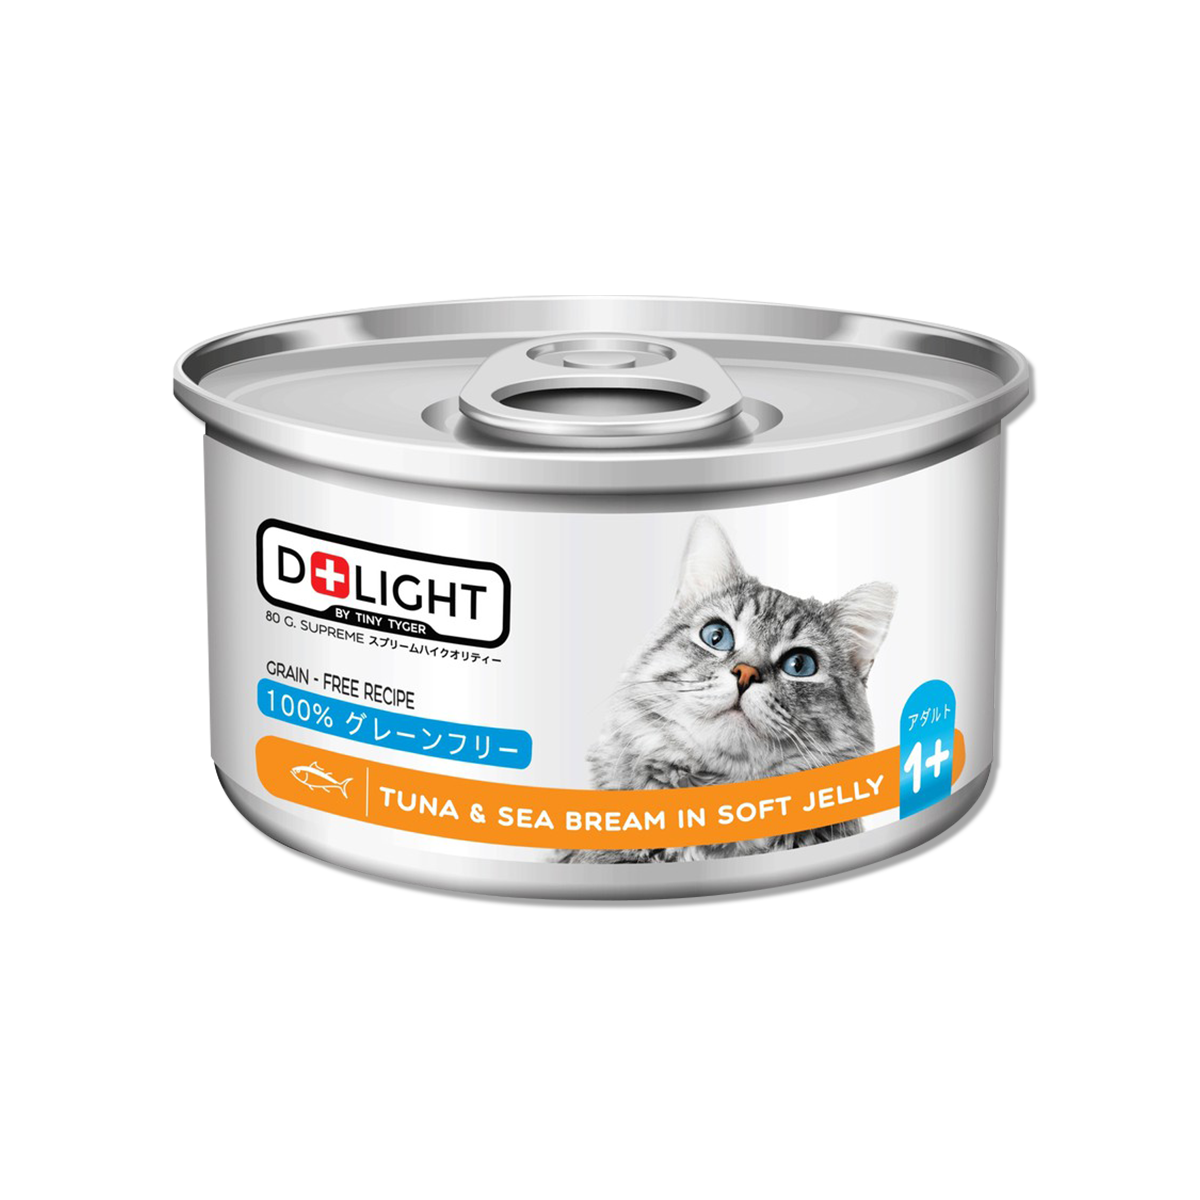 D+LIGHT Tuna Topping Sea Bream In Soft Jelly ดีไลท์ อาหารแมวกระป๋อง รสทูน่าเนื้อขาวพรีเมี่ยมหน้าปลาทรายแดงในเจลลี่นุ่ม 80 กรัม